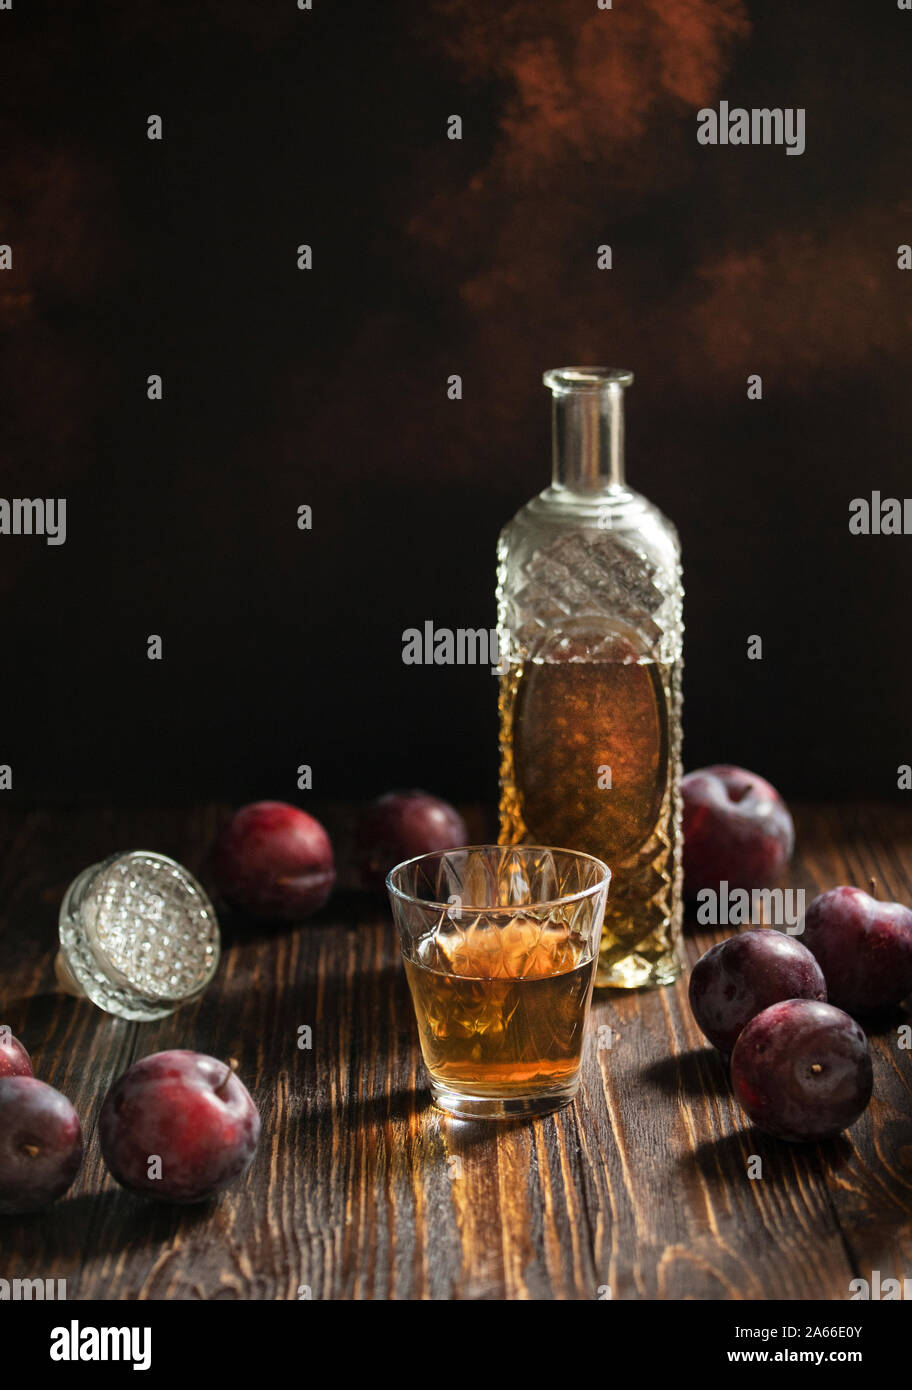 Rakia ou traditionnels de fruits brandy rakija des Balkans. Eau-de-vie de prune sljivovica dans un verre et la carafe sur une table en bois et un arrière-plan sombre. La verticale Banque D'Images